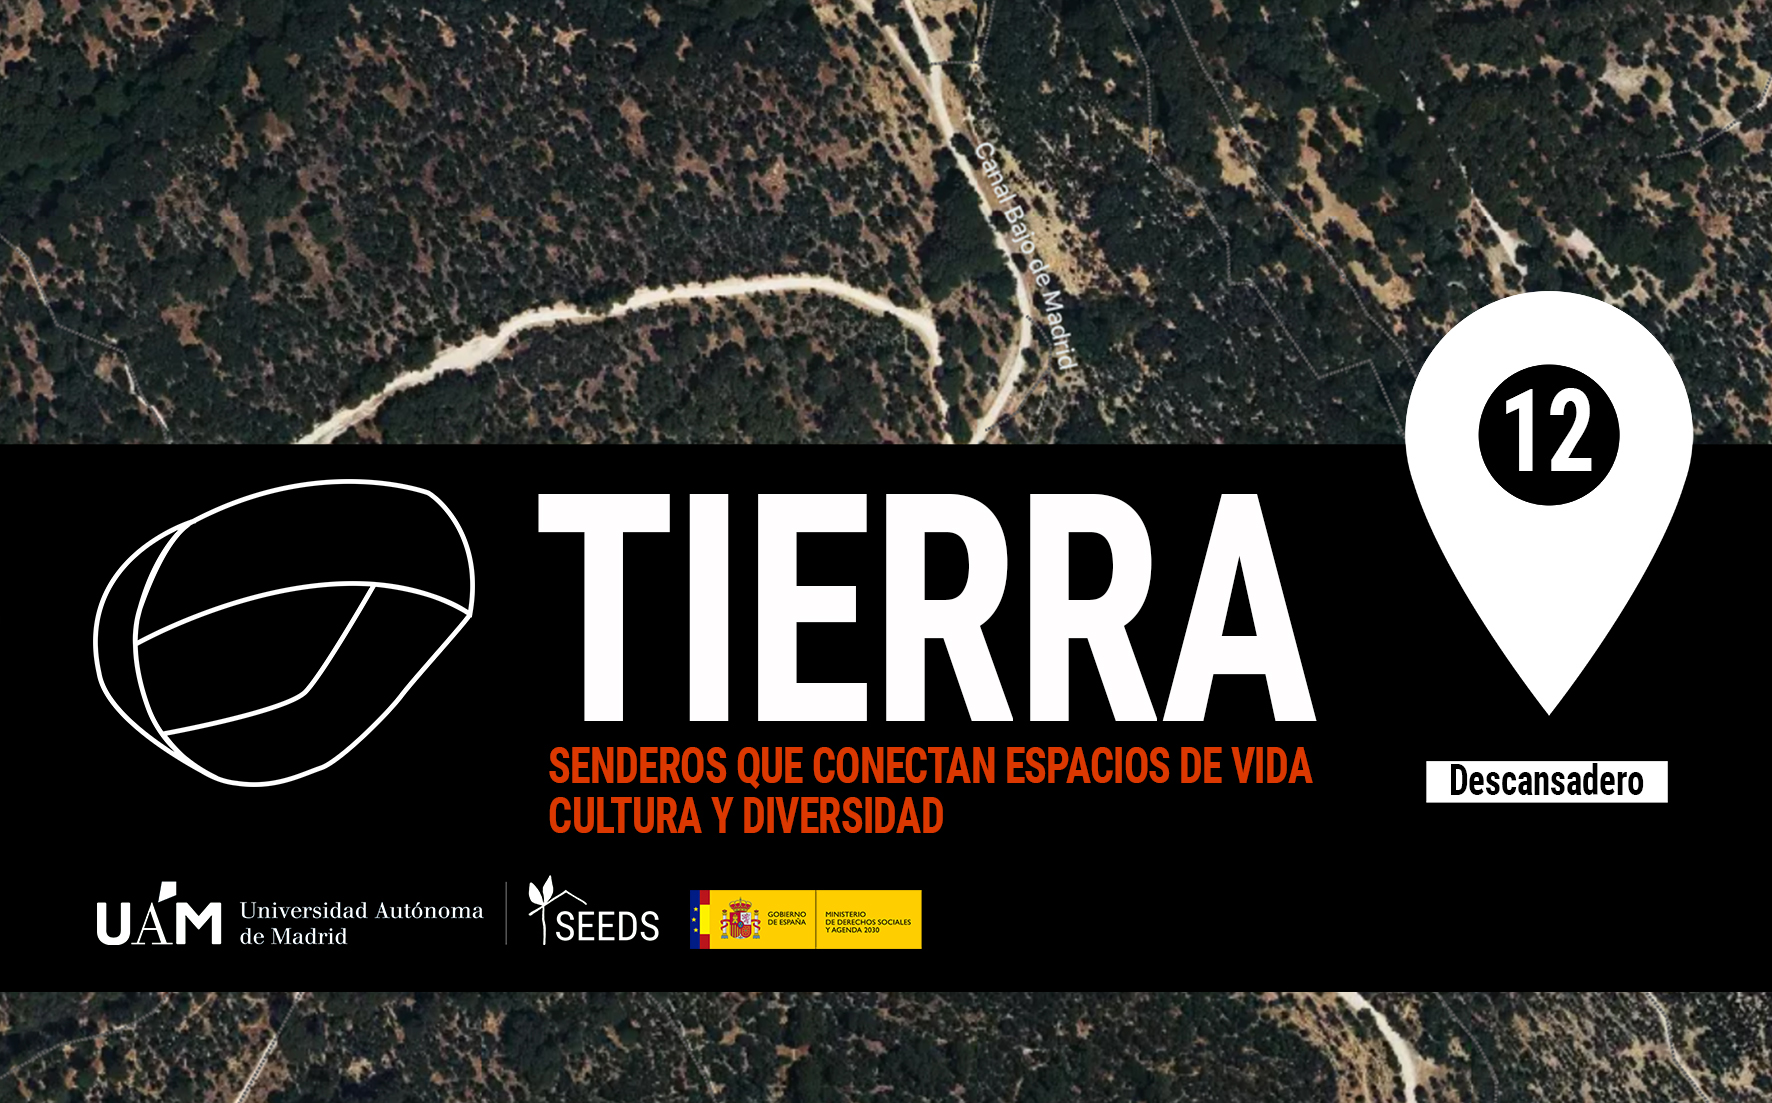 TIERRA: Descansadero 12_Senderos que conectan vida cultura diversidad